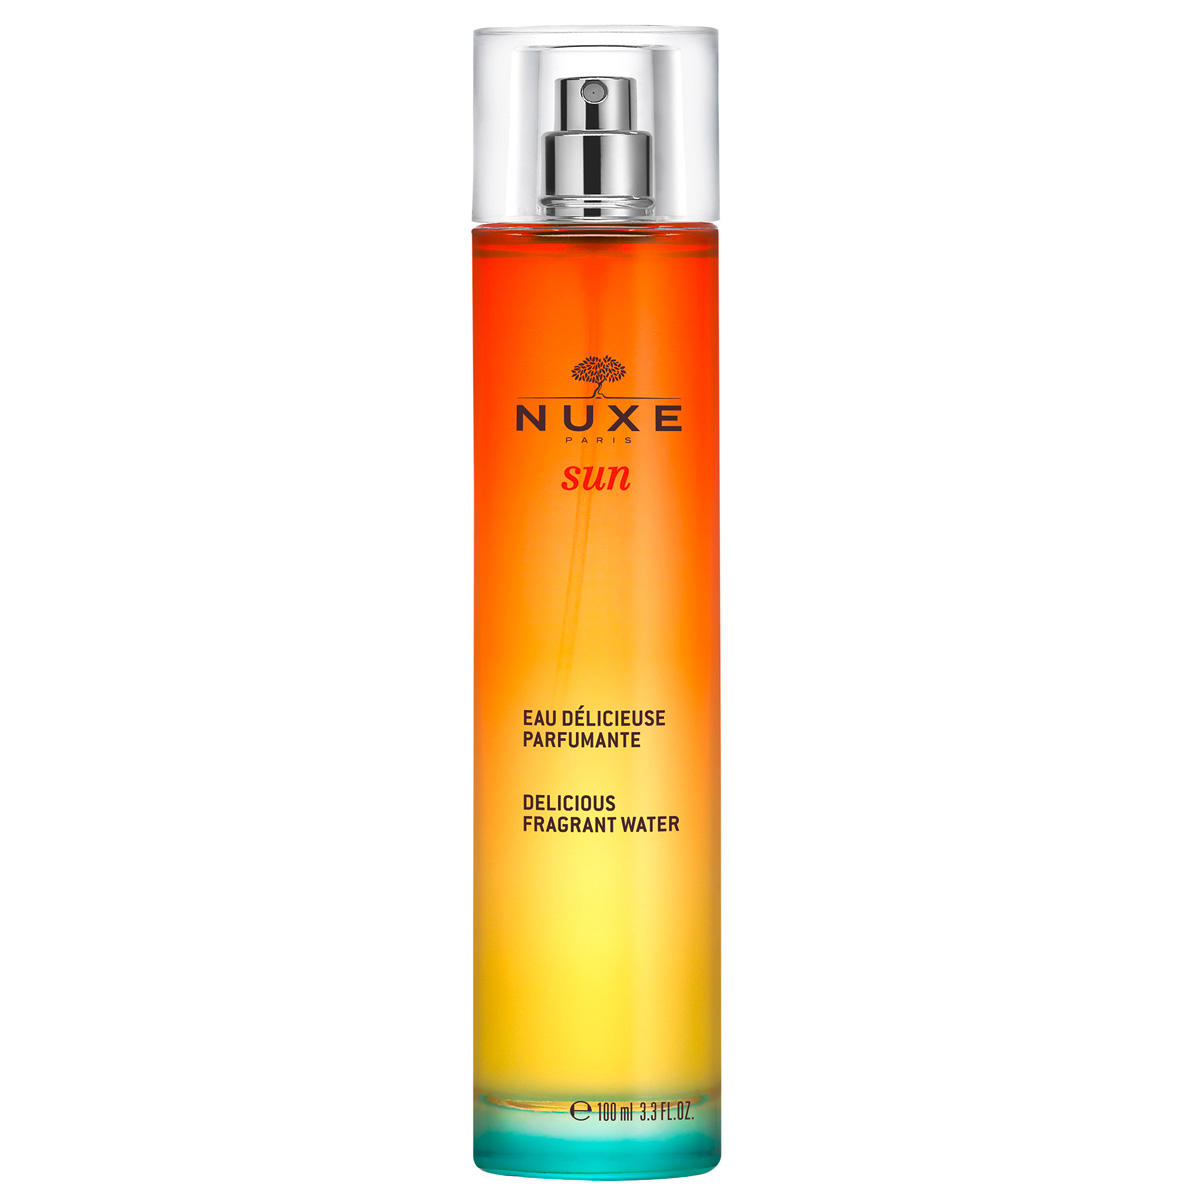 NUXE Sun Spray de fragancia Sunny 100 ml - 1